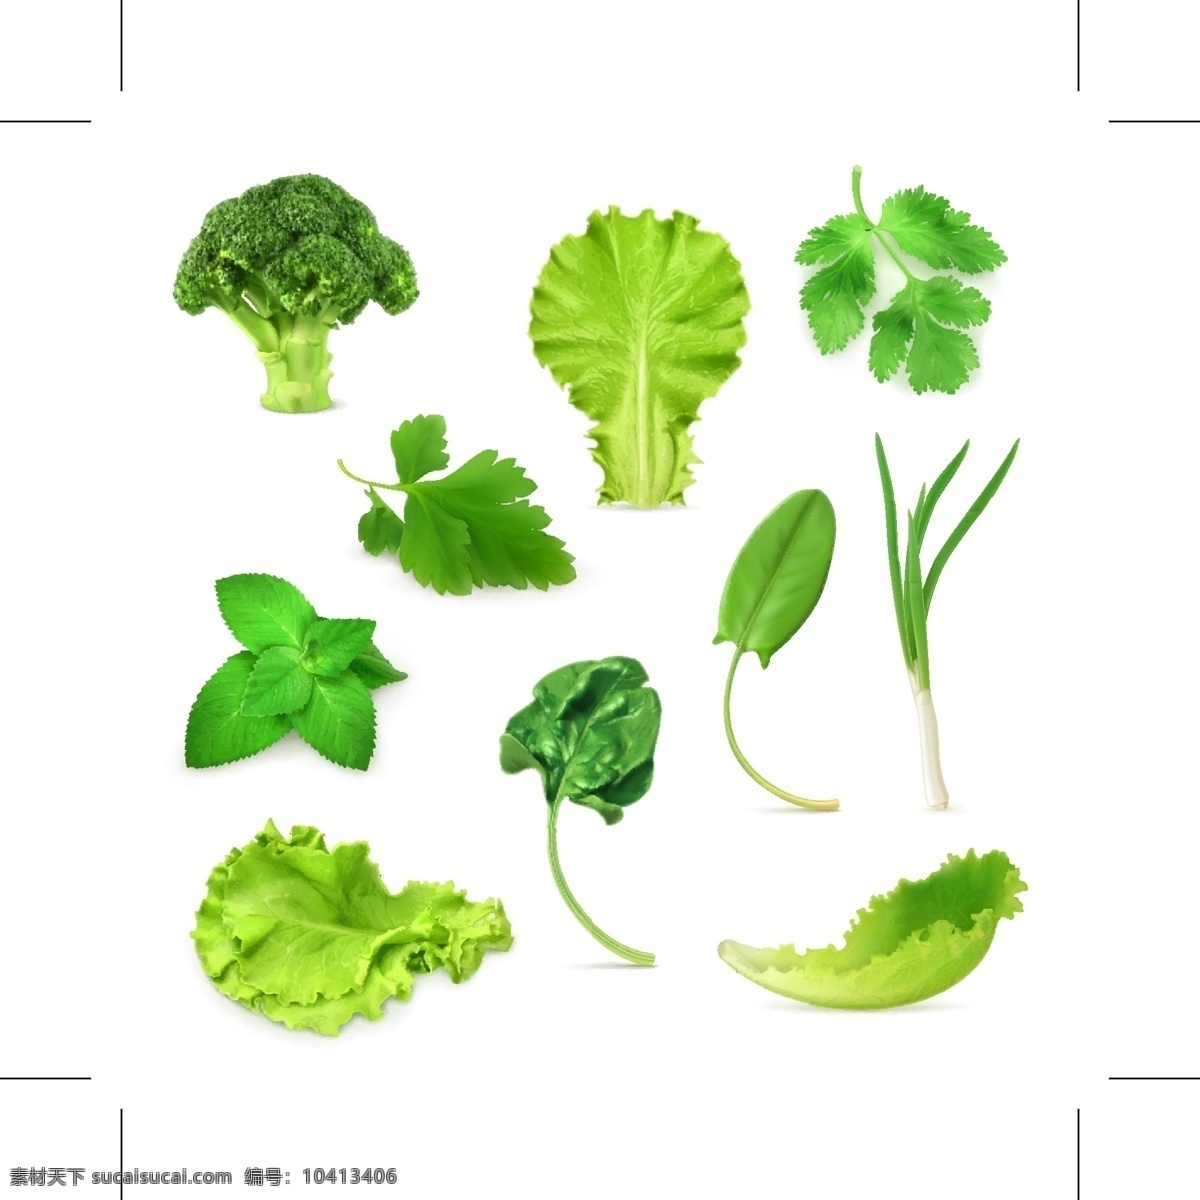 青菜图形标识 叶子 绿叶 香菜 菜花 青葱 绿色植物 食材